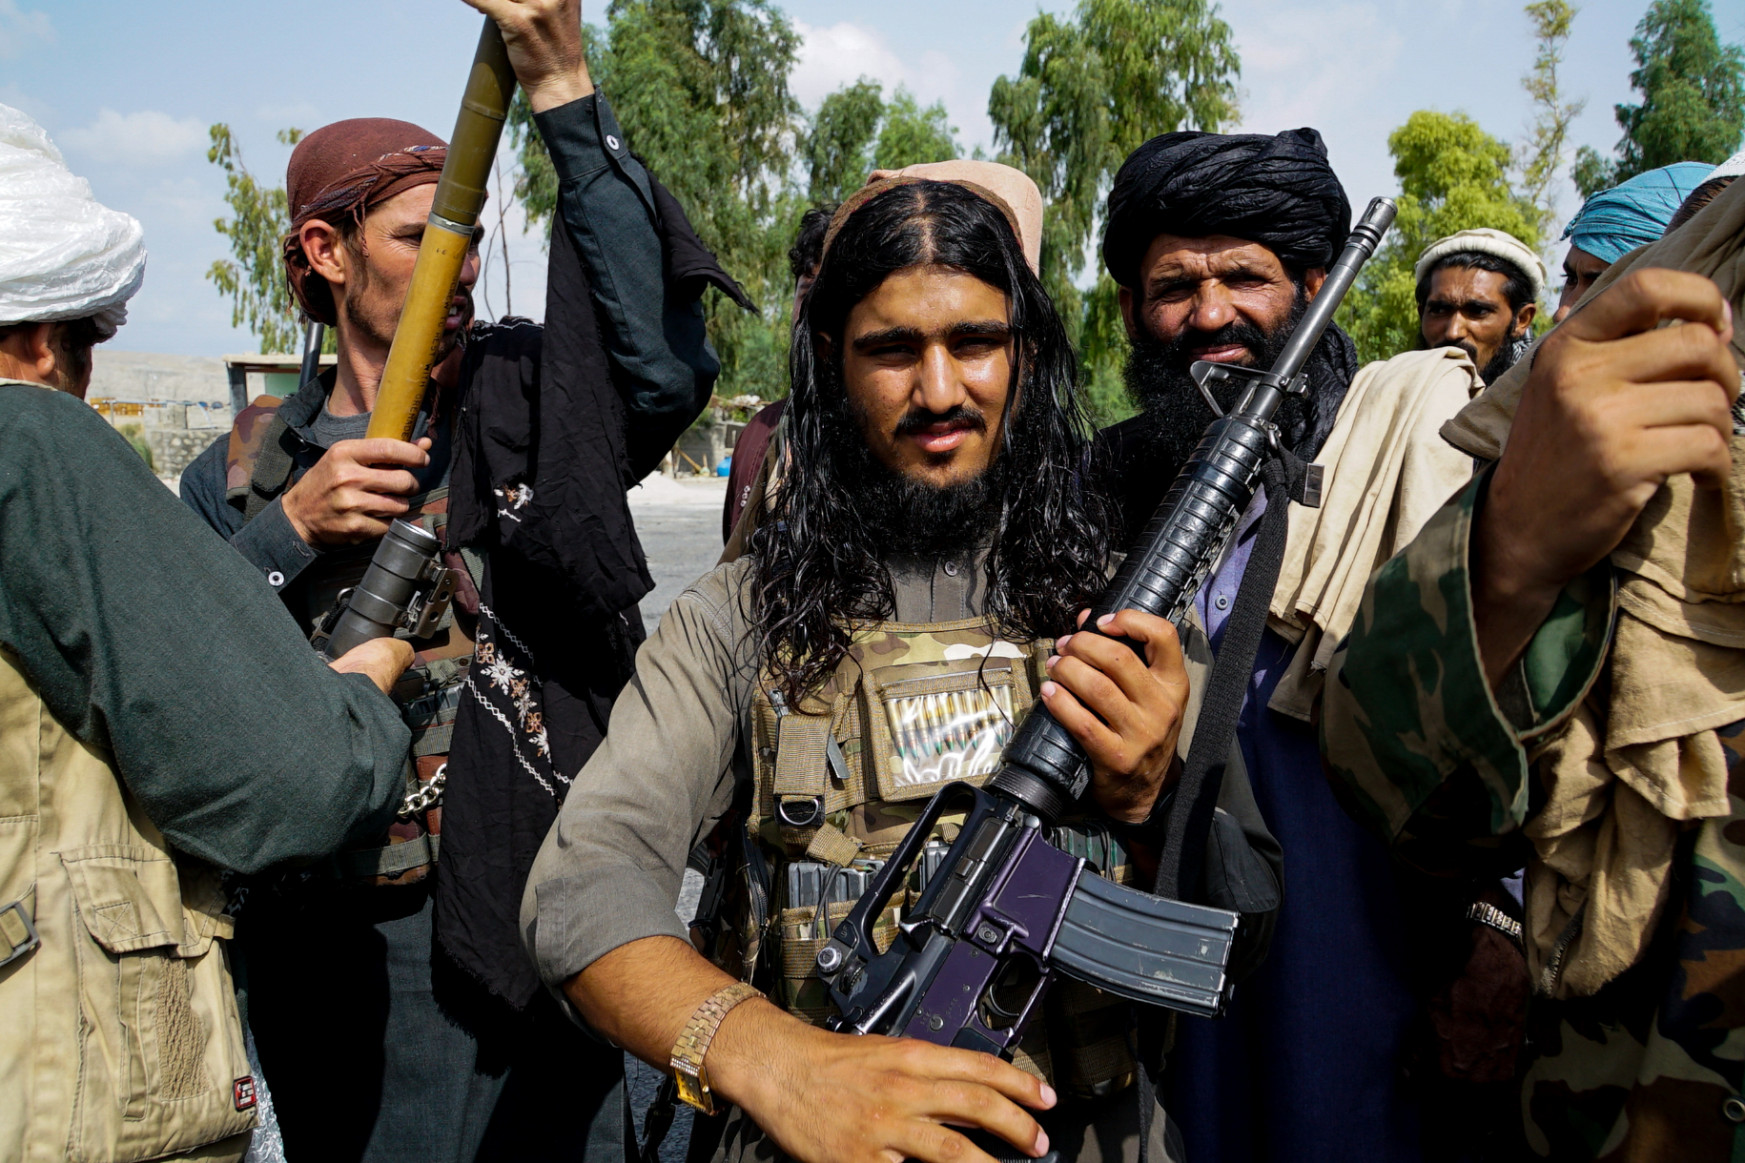 Fegyveres kamaszok ejtettek fogságba Afganisztánban, és tálibok mentettek meg a táliboktól